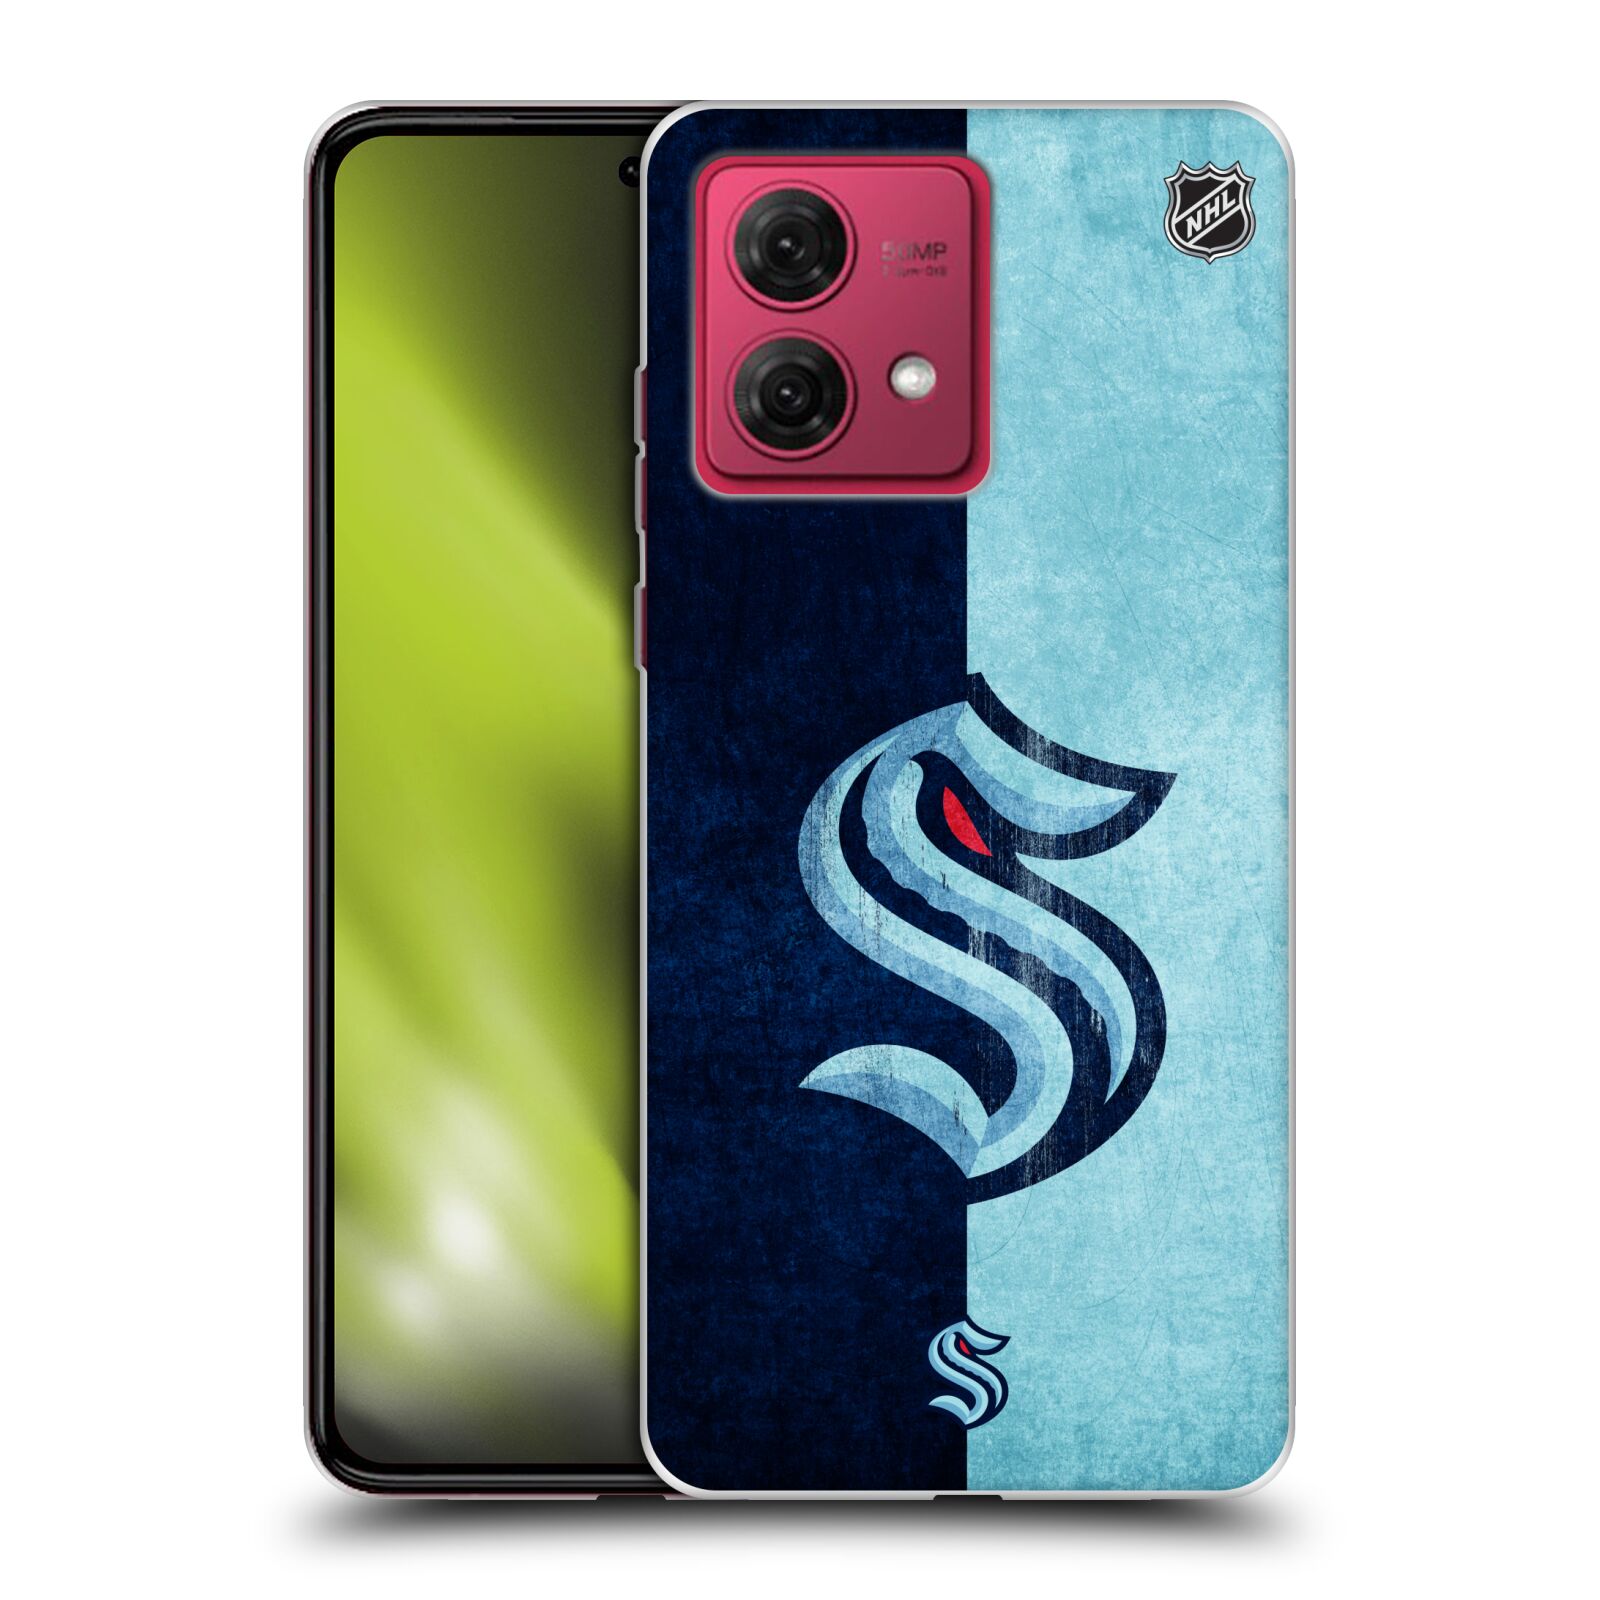 Silikonové pouzdro na mobil Motorola Moto G84 5G - NHL - Půlené logo Seattle Kraken (Silikonový kryt, obal, pouzdro na mobilní telefon Motorola Moto G84 5G s licencovaným motivem NHL - Půlené logo Seattle Kraken)